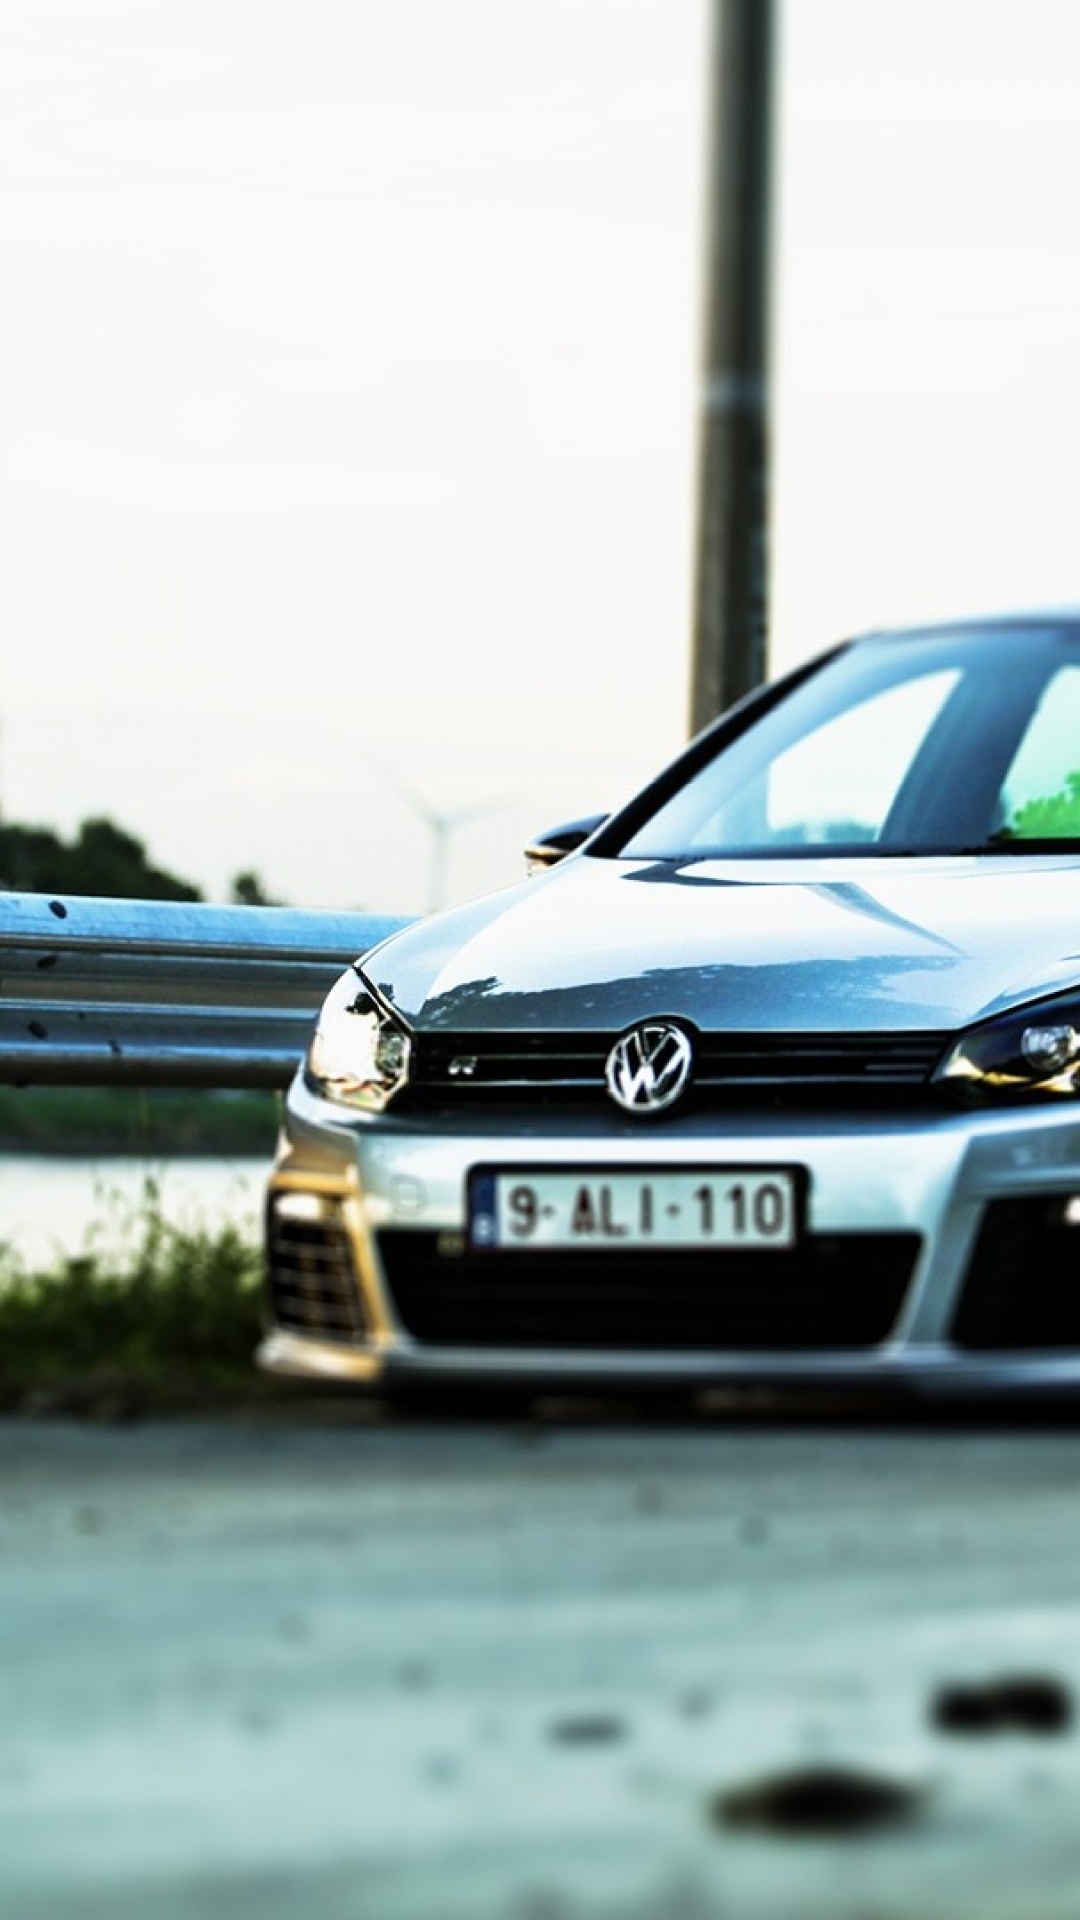 Volkswagen Golf R Iphone Wallpapers